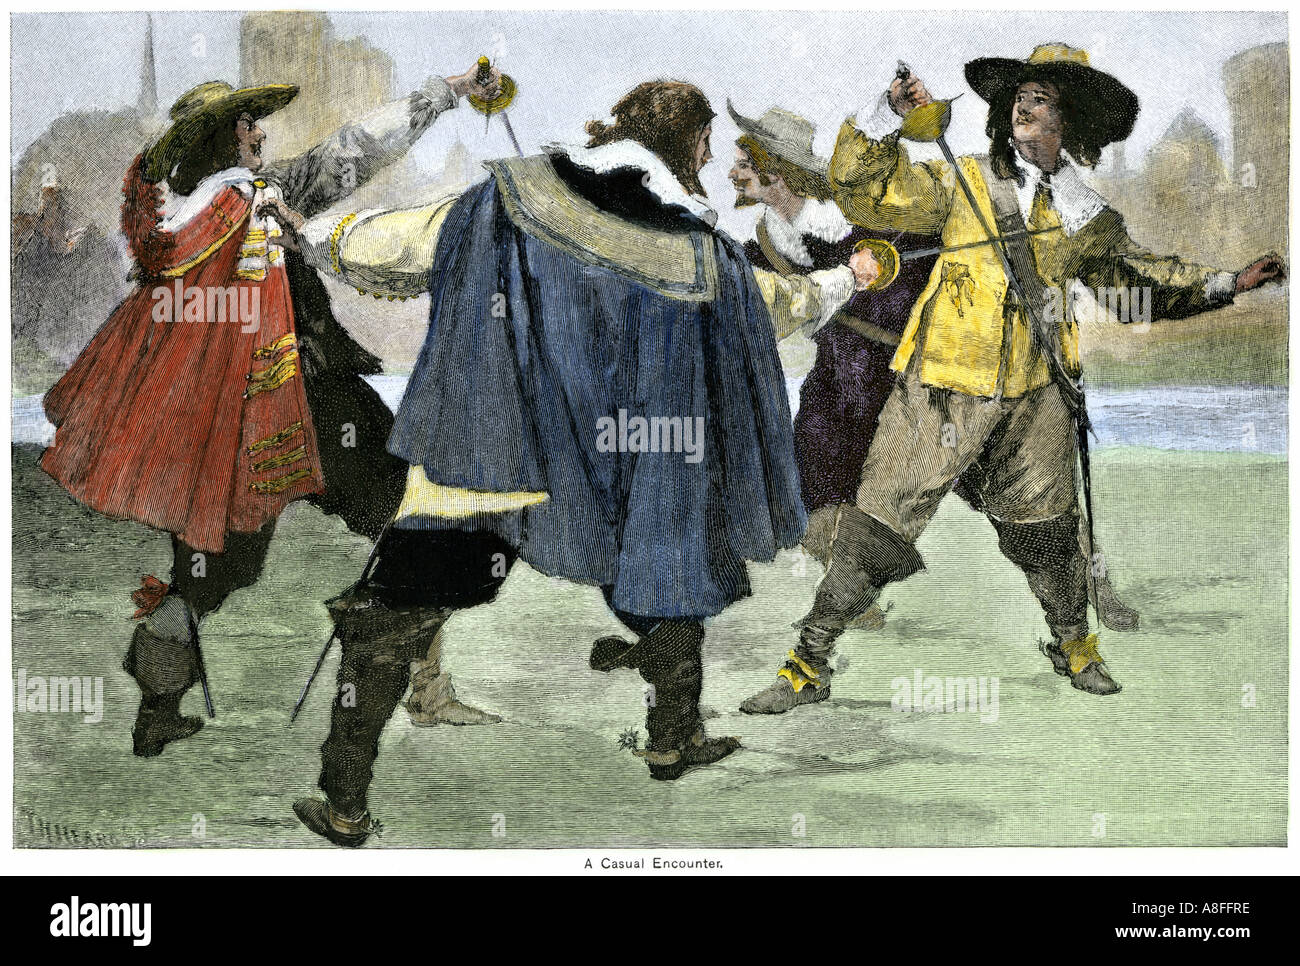 Trois Mousquetaires dans un combat à l'épée avec un adversaire dans le roman d'Alexandre Dumas. À la main, gravure sur bois Banque D'Images